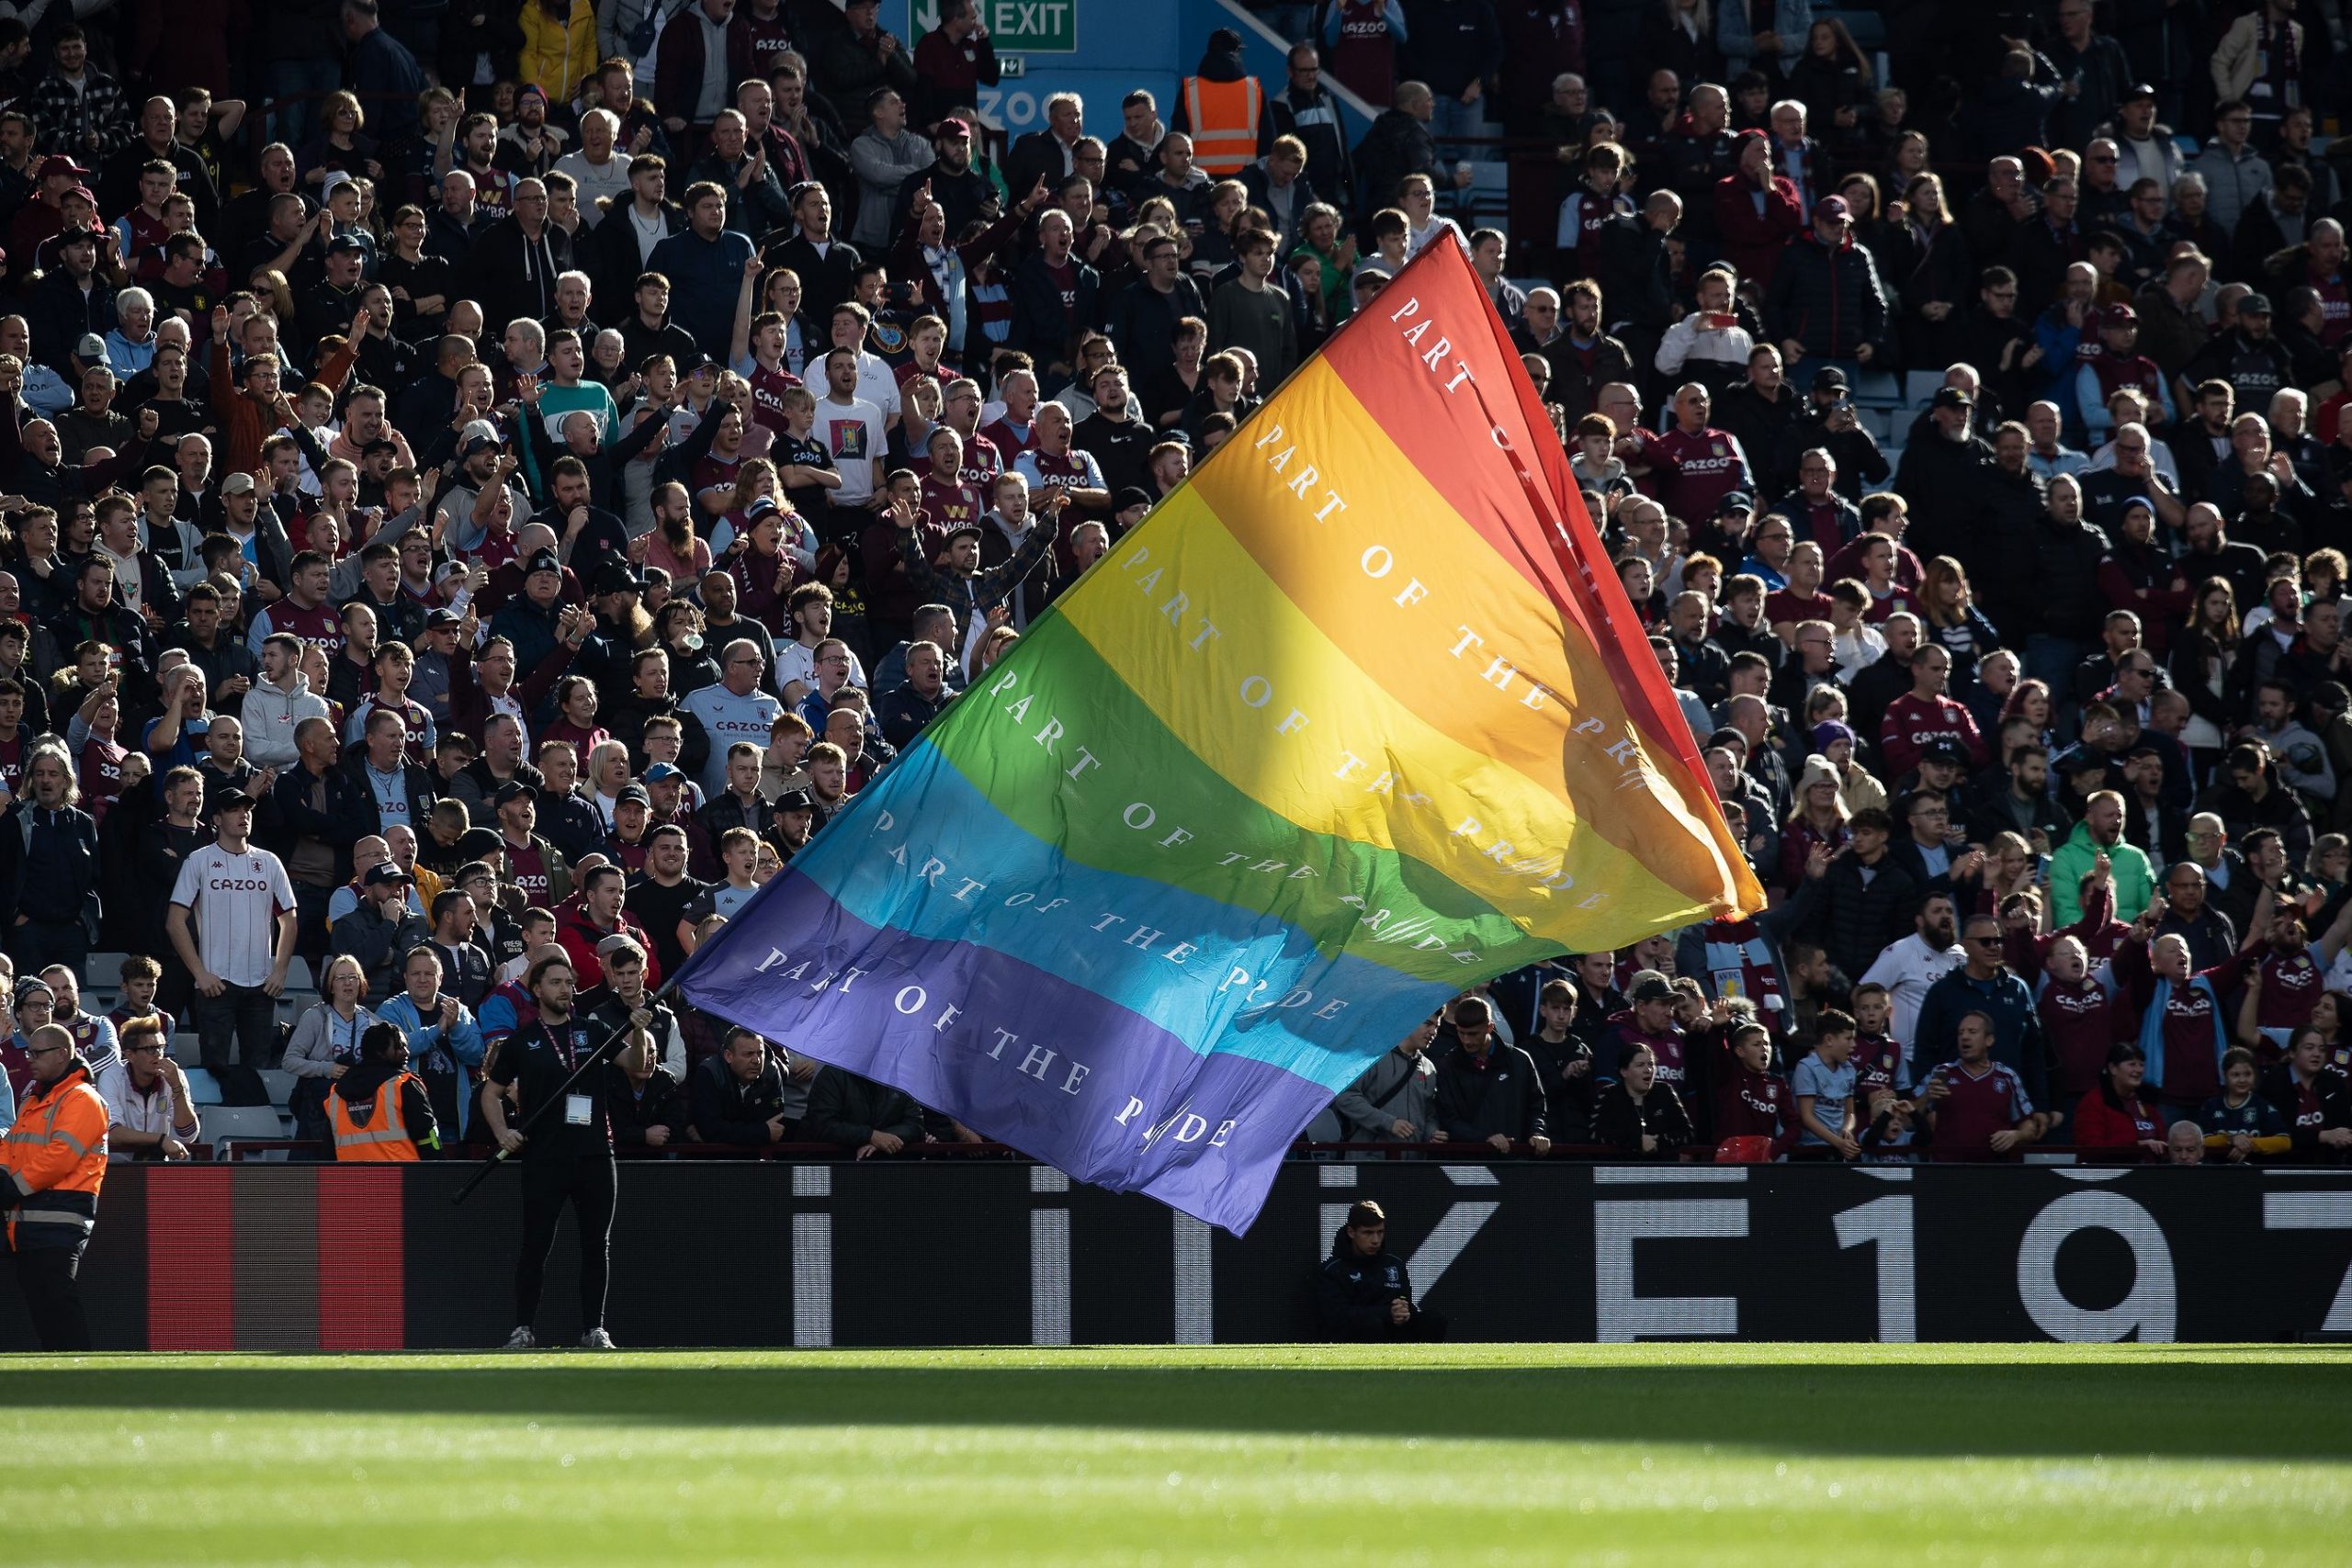 Pride flag being waved in stadium